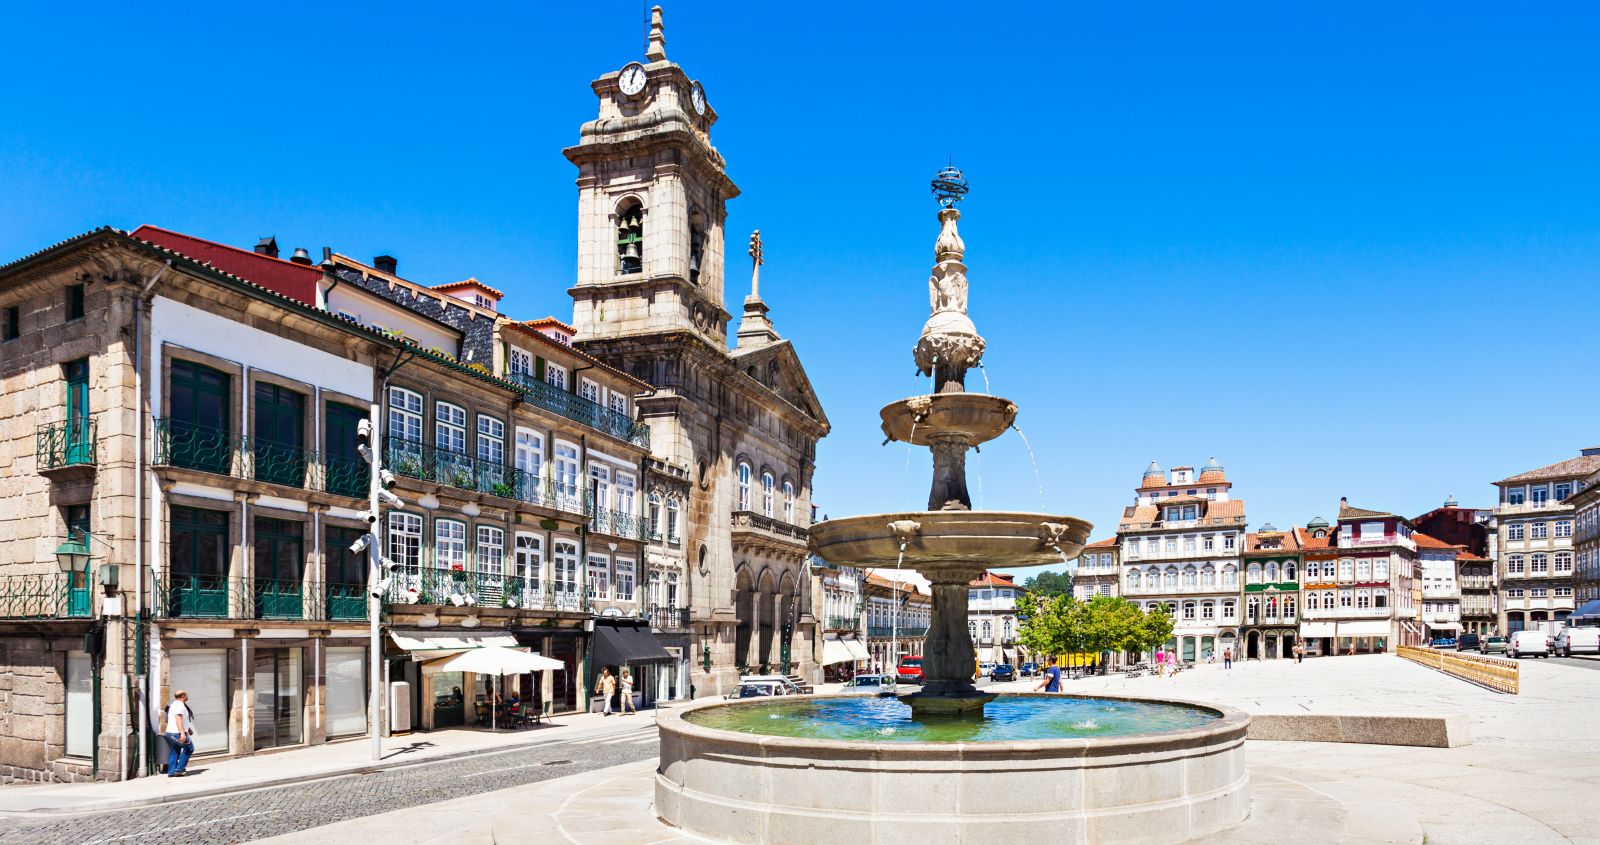 City square in Guimarães.